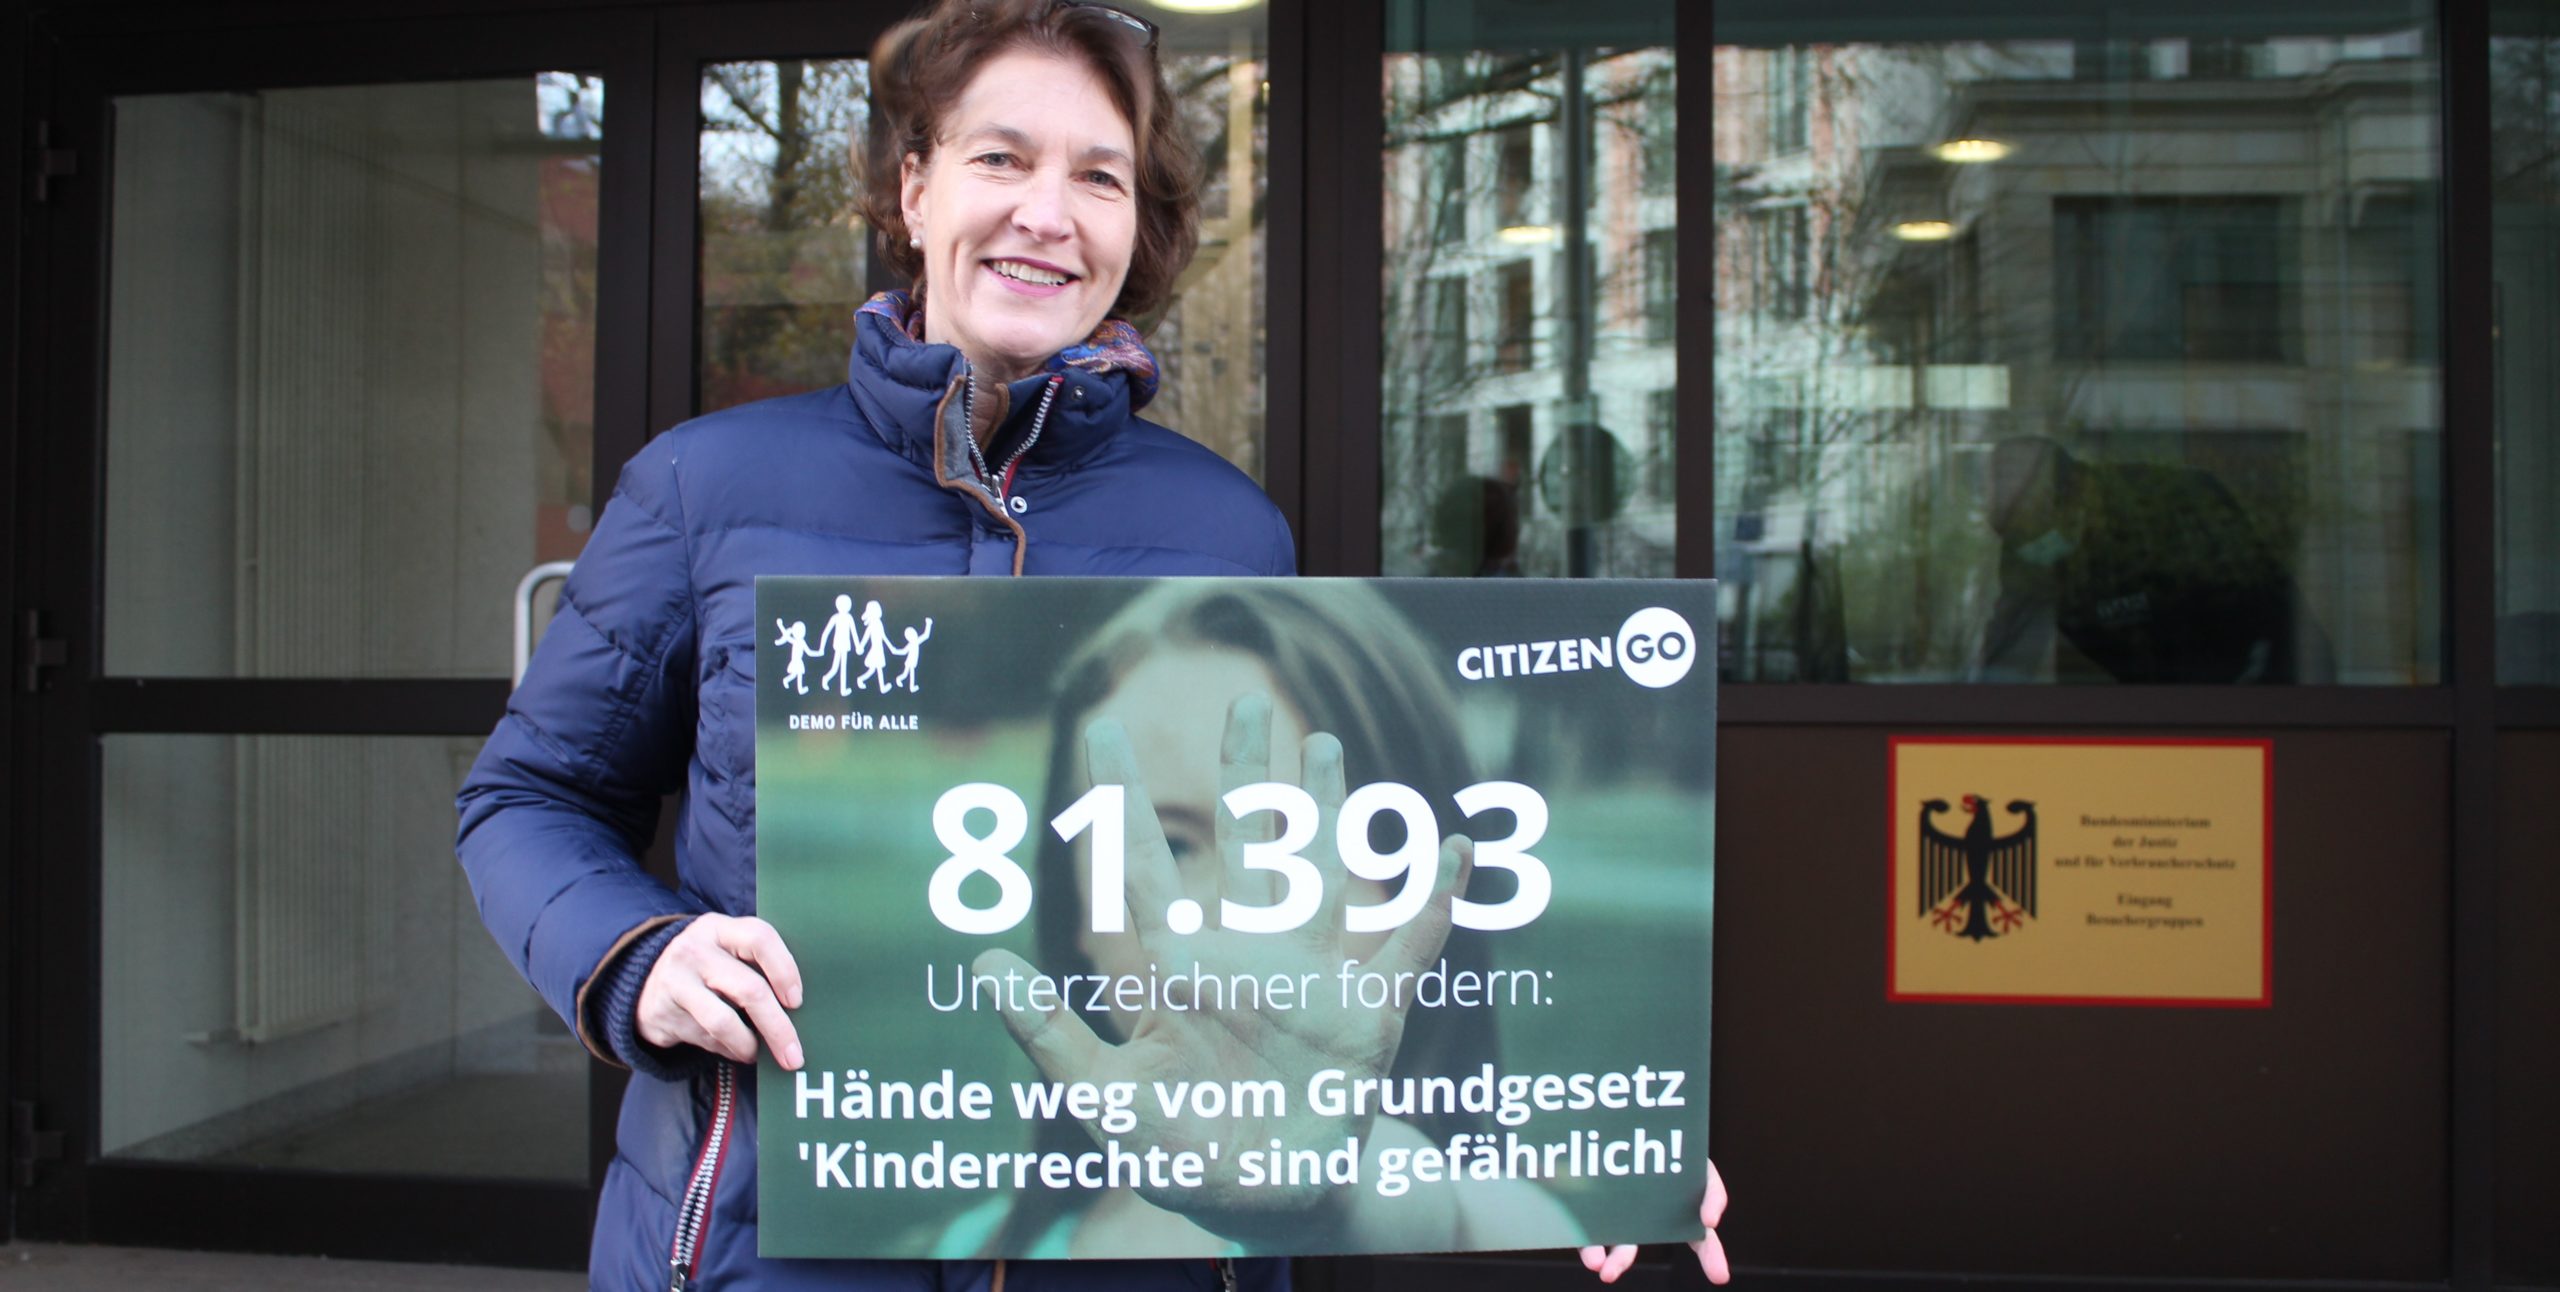 DemoFürAlle-Besuch beim Justizministerium: Keine „Kinderrechte“ ins Grundgesetz!